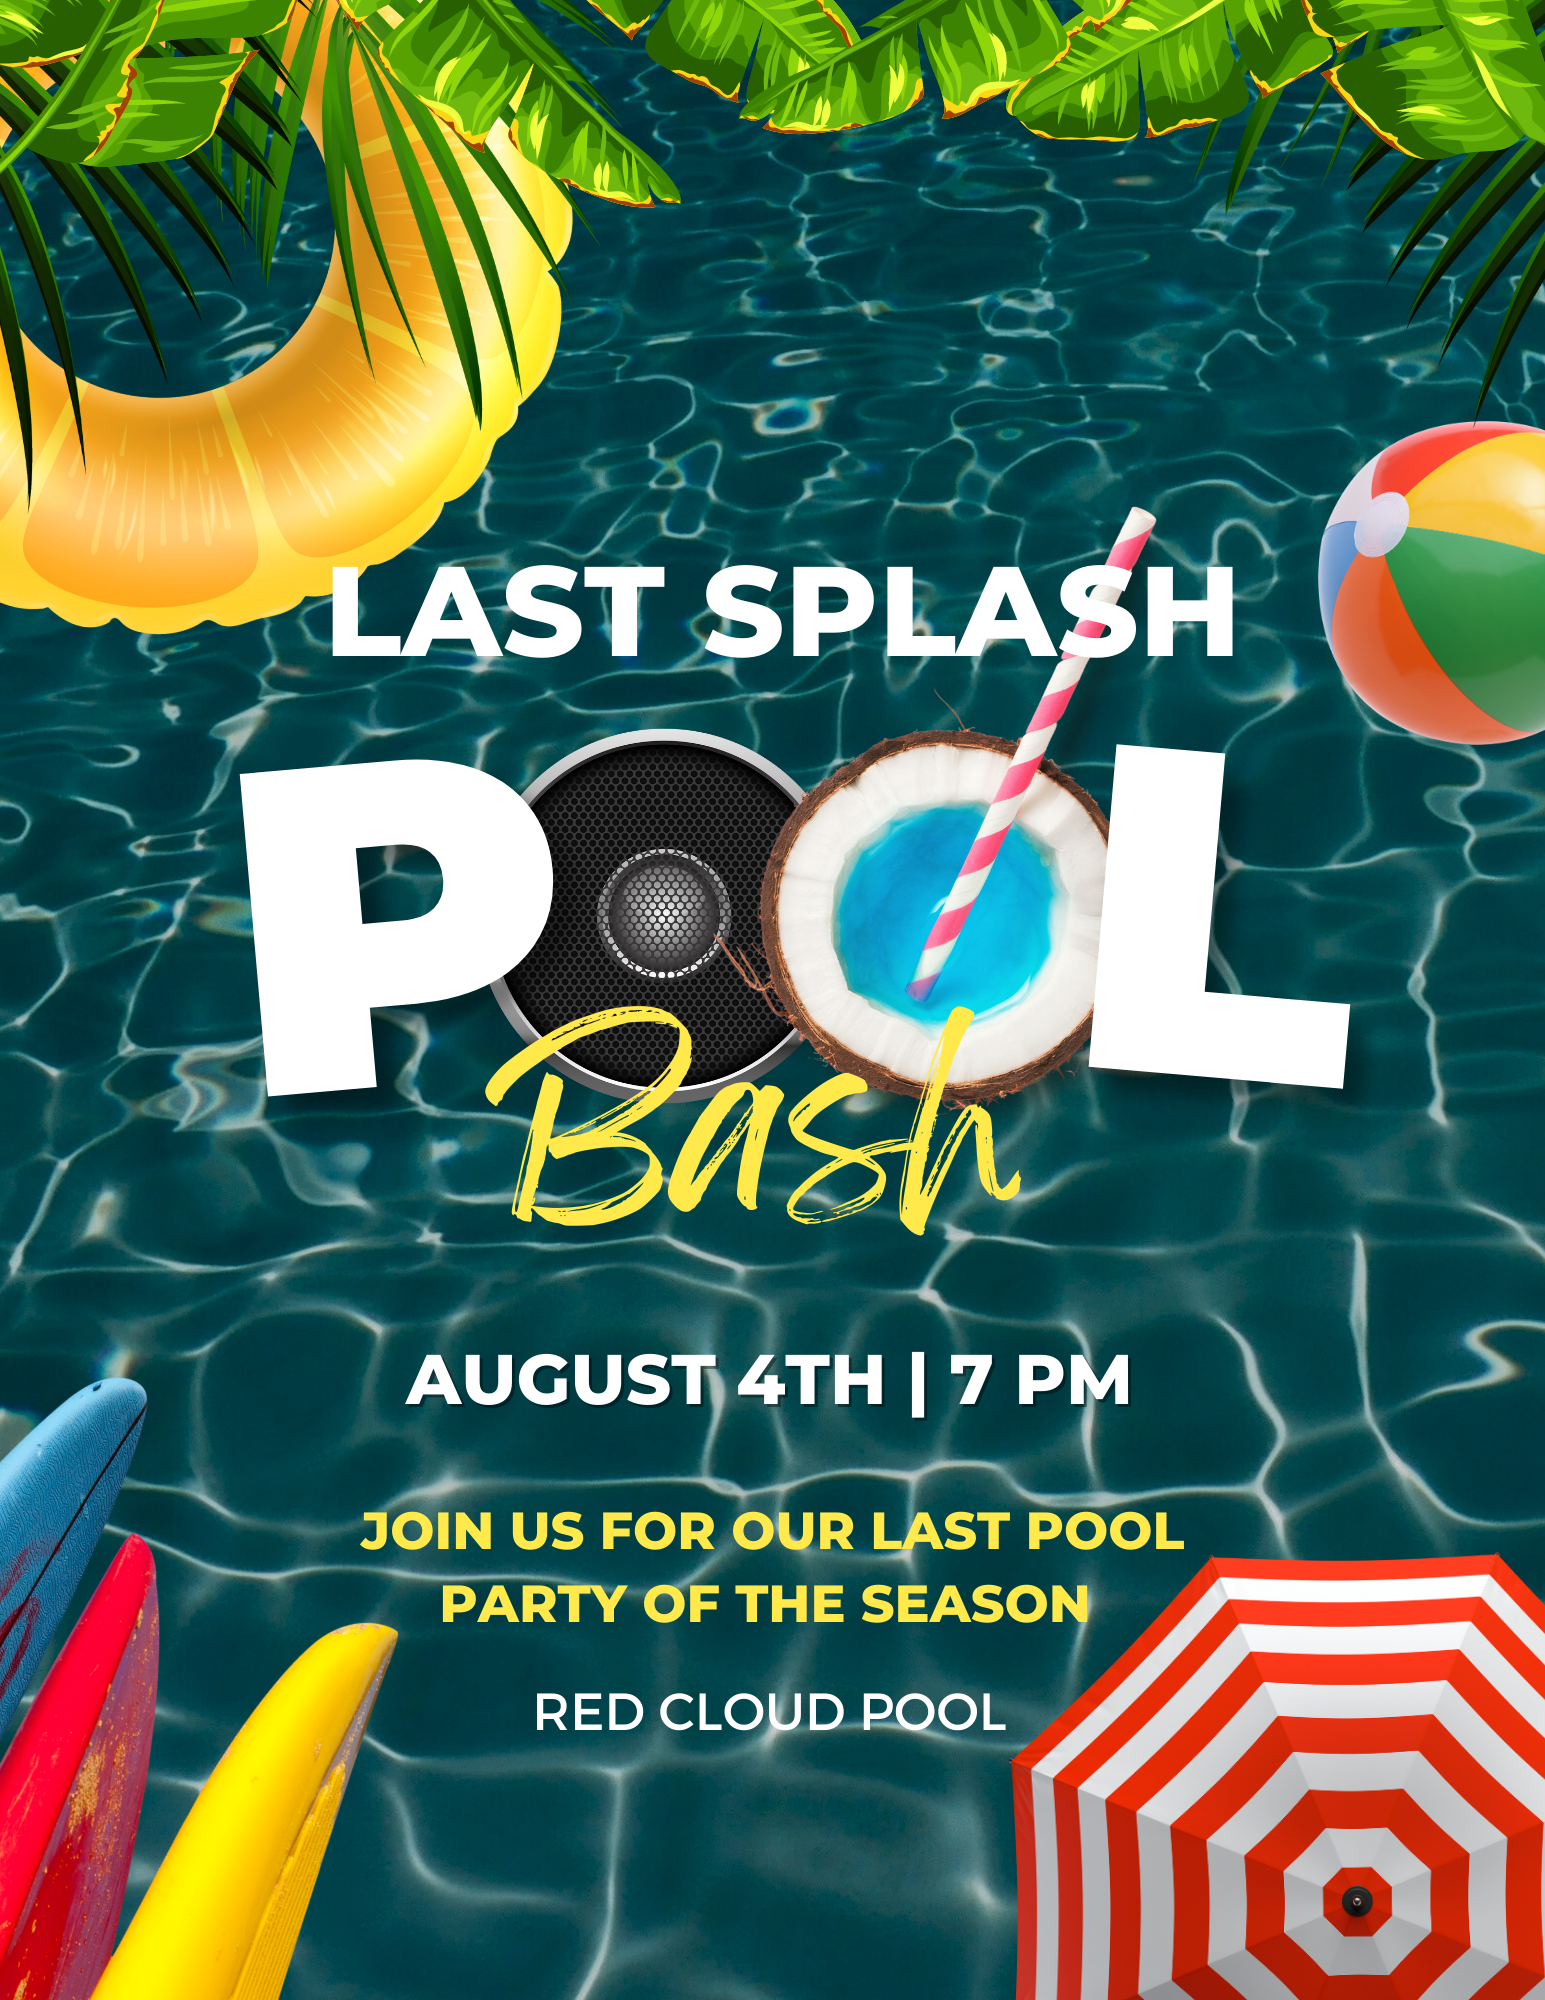 Last Splash Pool Bash August 4th 